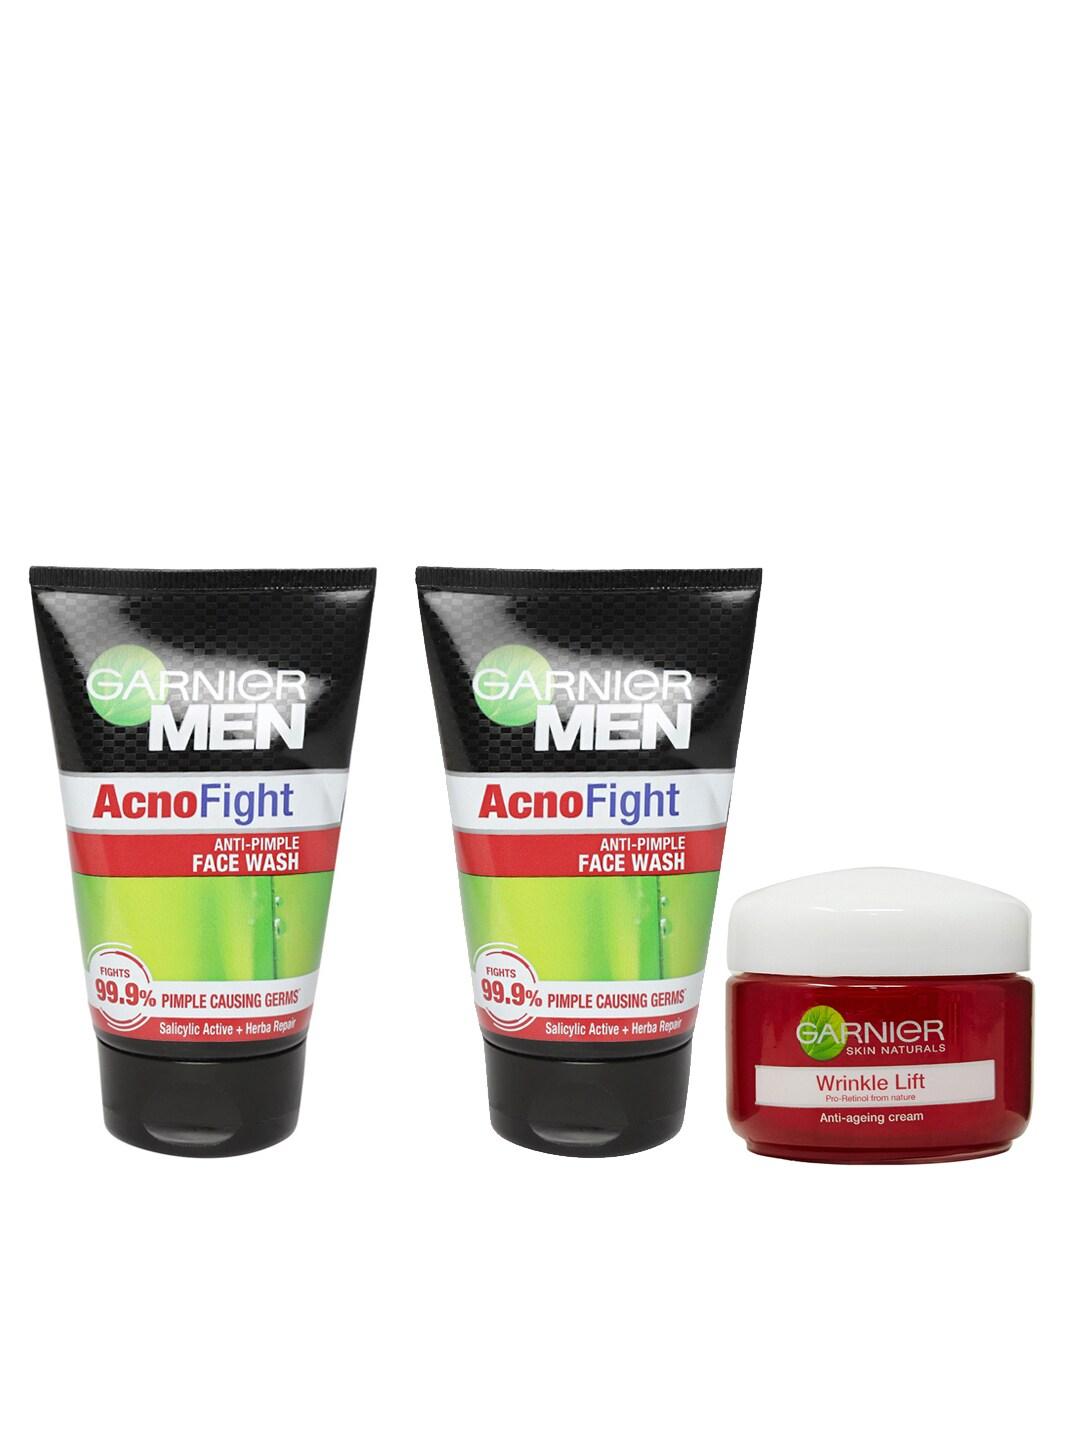 Garnier Set of 1 Women Wrinkle Lift Anti-Ageing Cream & 2 Men Anti-Pimple Face Wash